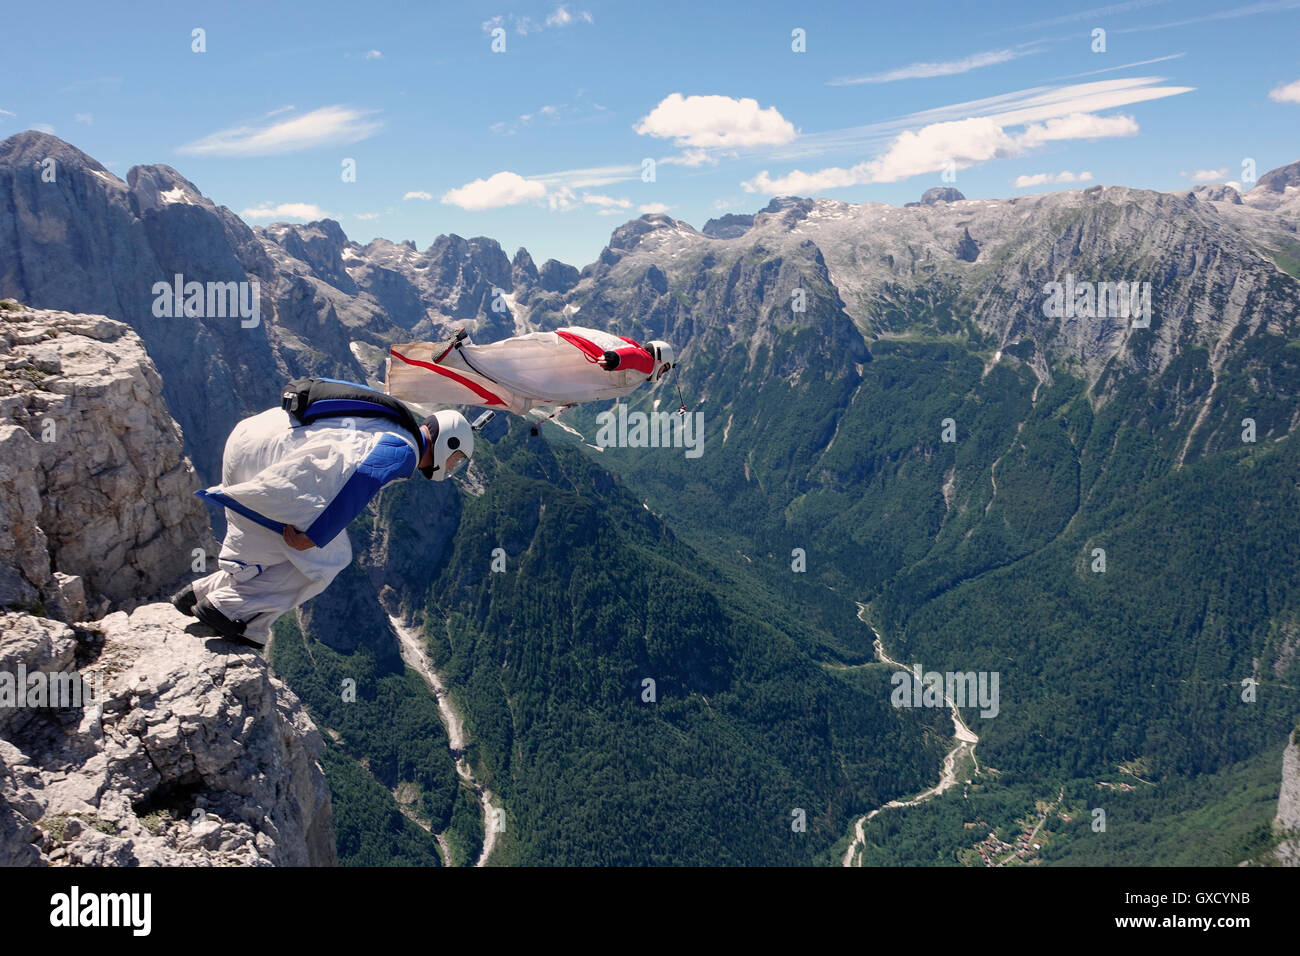 BASE jumping Wingsuit-Piloten sind zusammen springen von einer Klippe und hinunter ins Tal, Italienische Alpen, Alleghe, Belluno, Italien Stockfoto